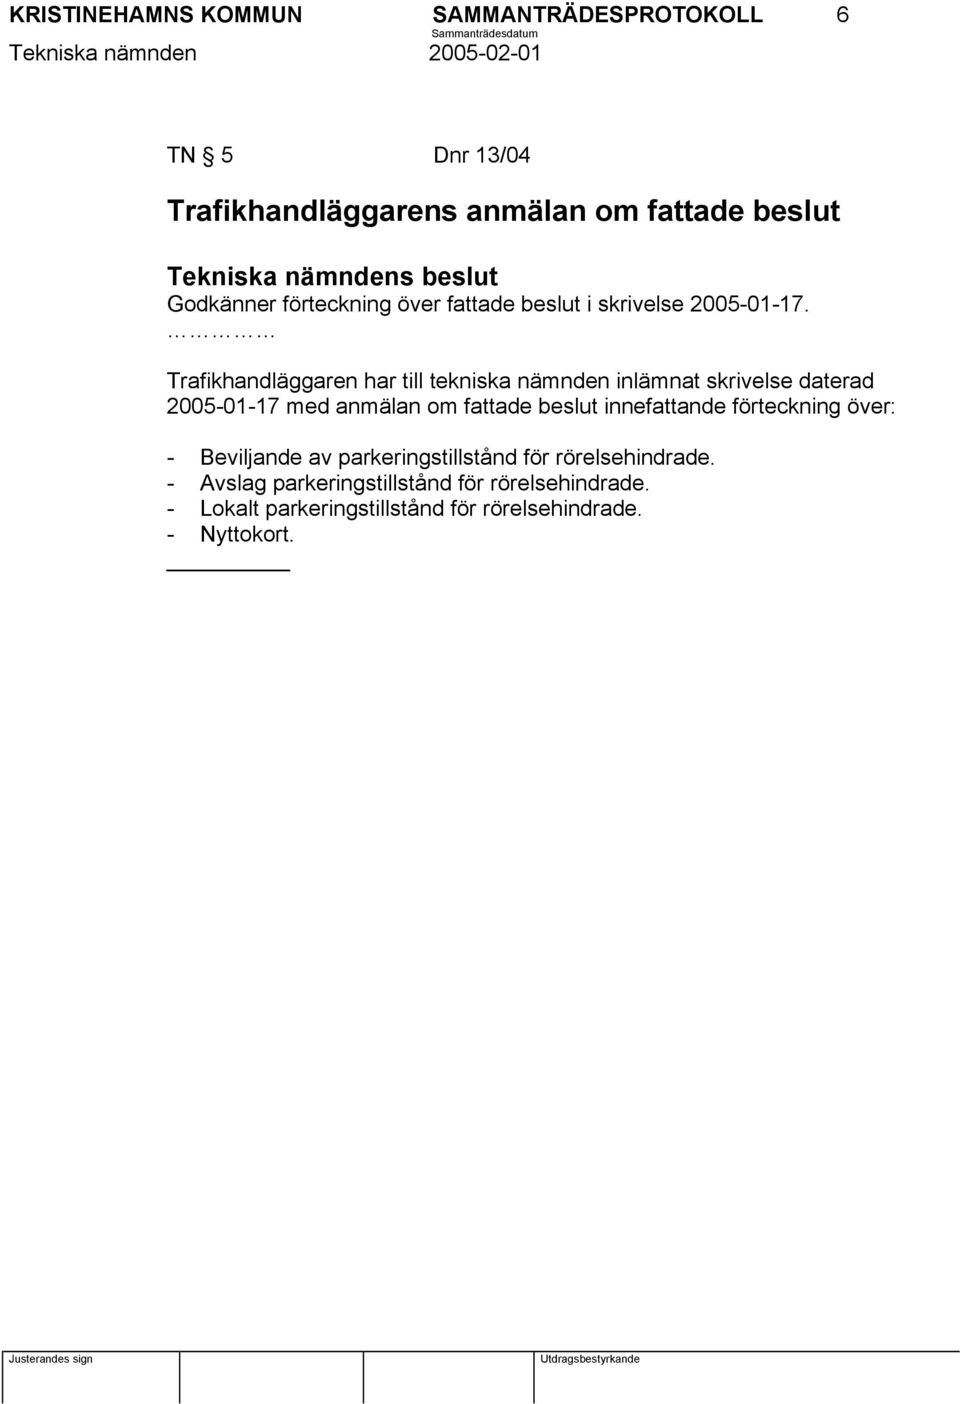 Trafikhandläggaren har till tekniska nämnden inlämnat skrivelse daterad 2005-01-17 med anmälan om fattade beslut